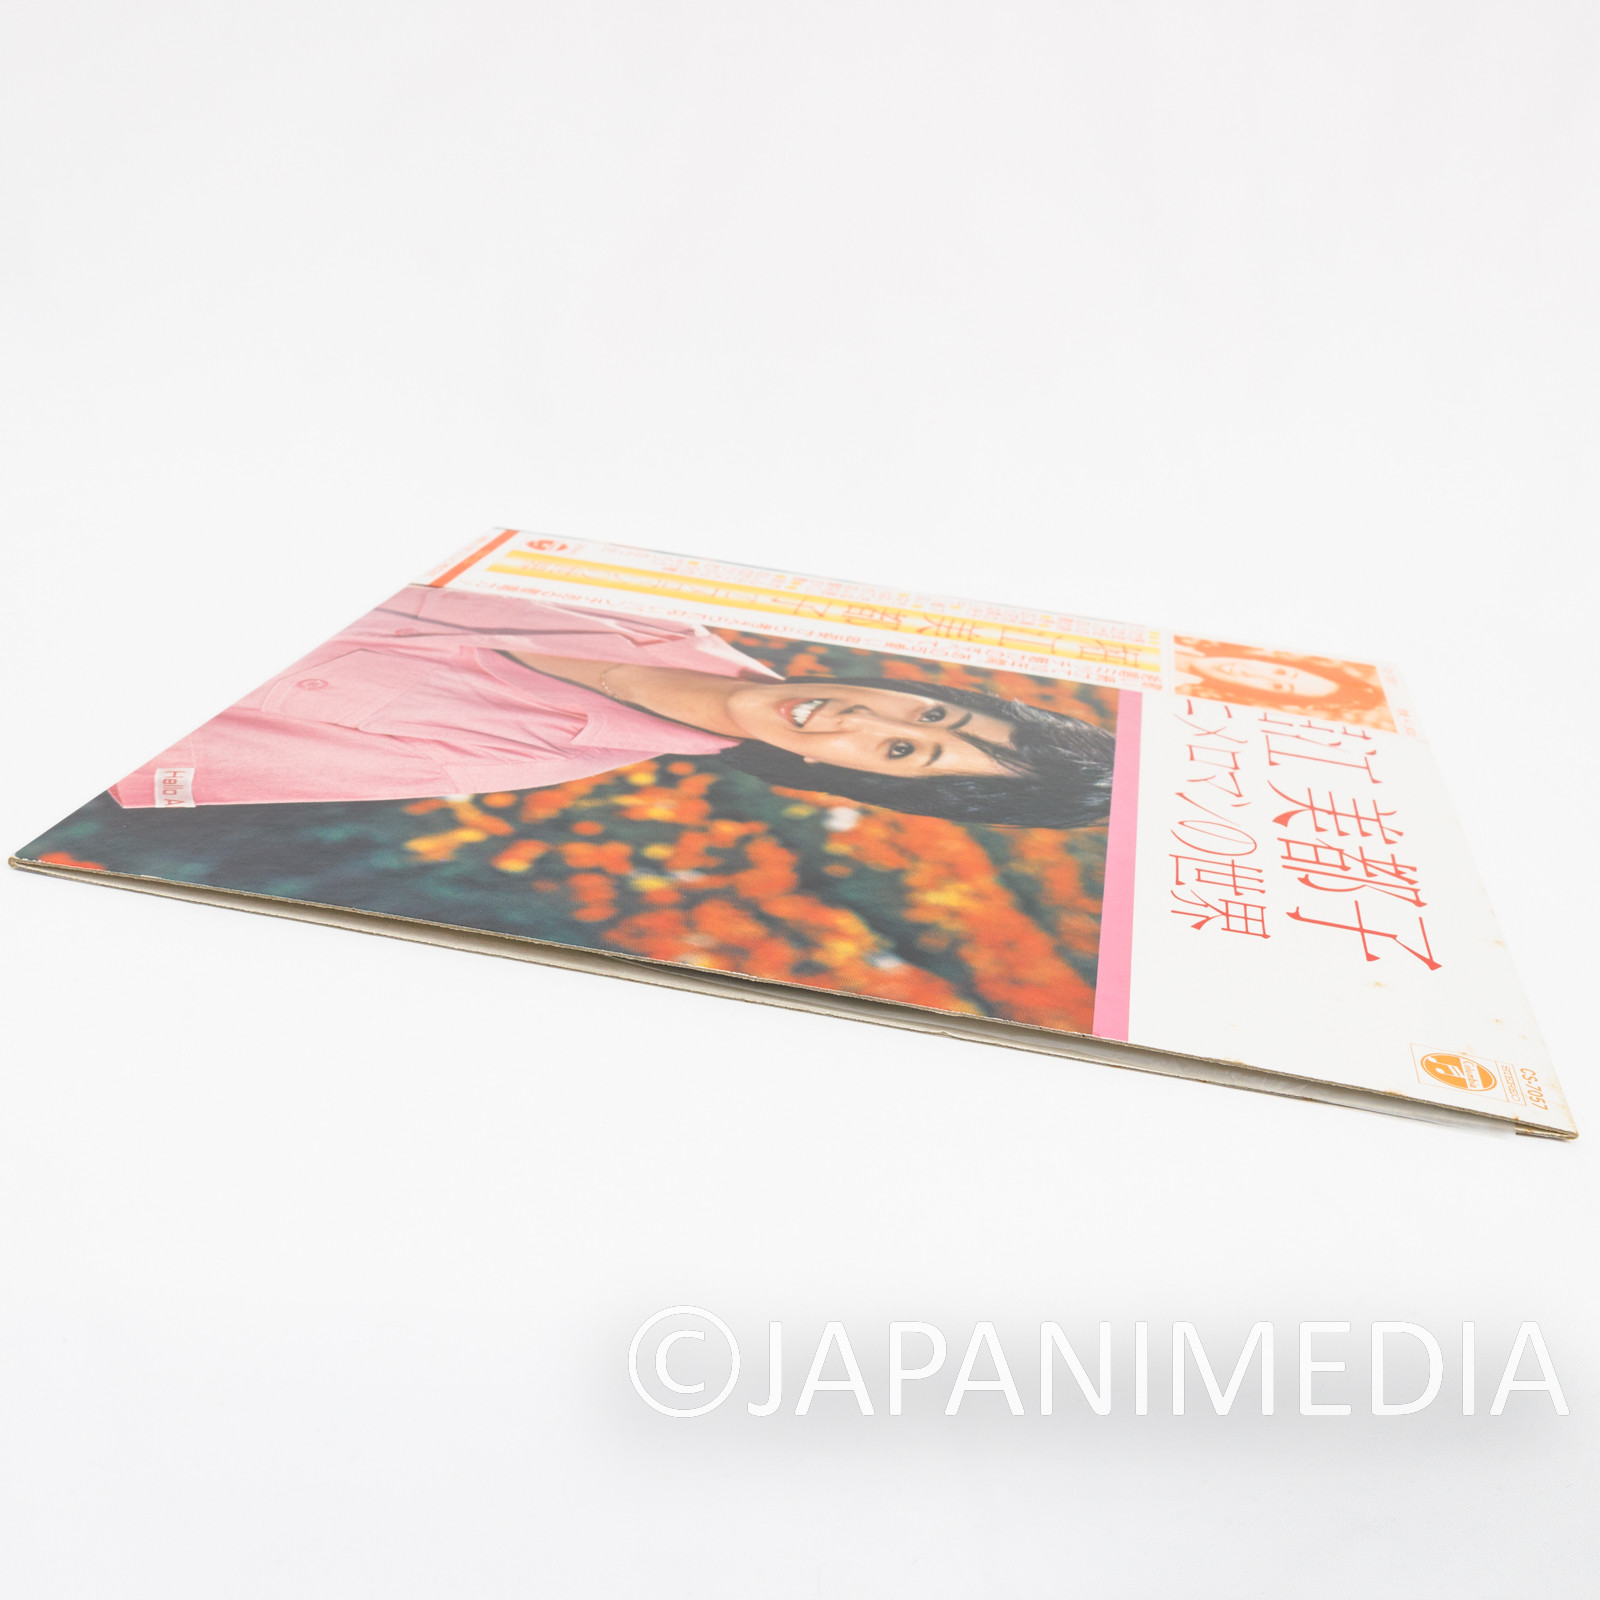 Mitsuko Horie World of Anime Roman LP Vinyl Record CS-7057